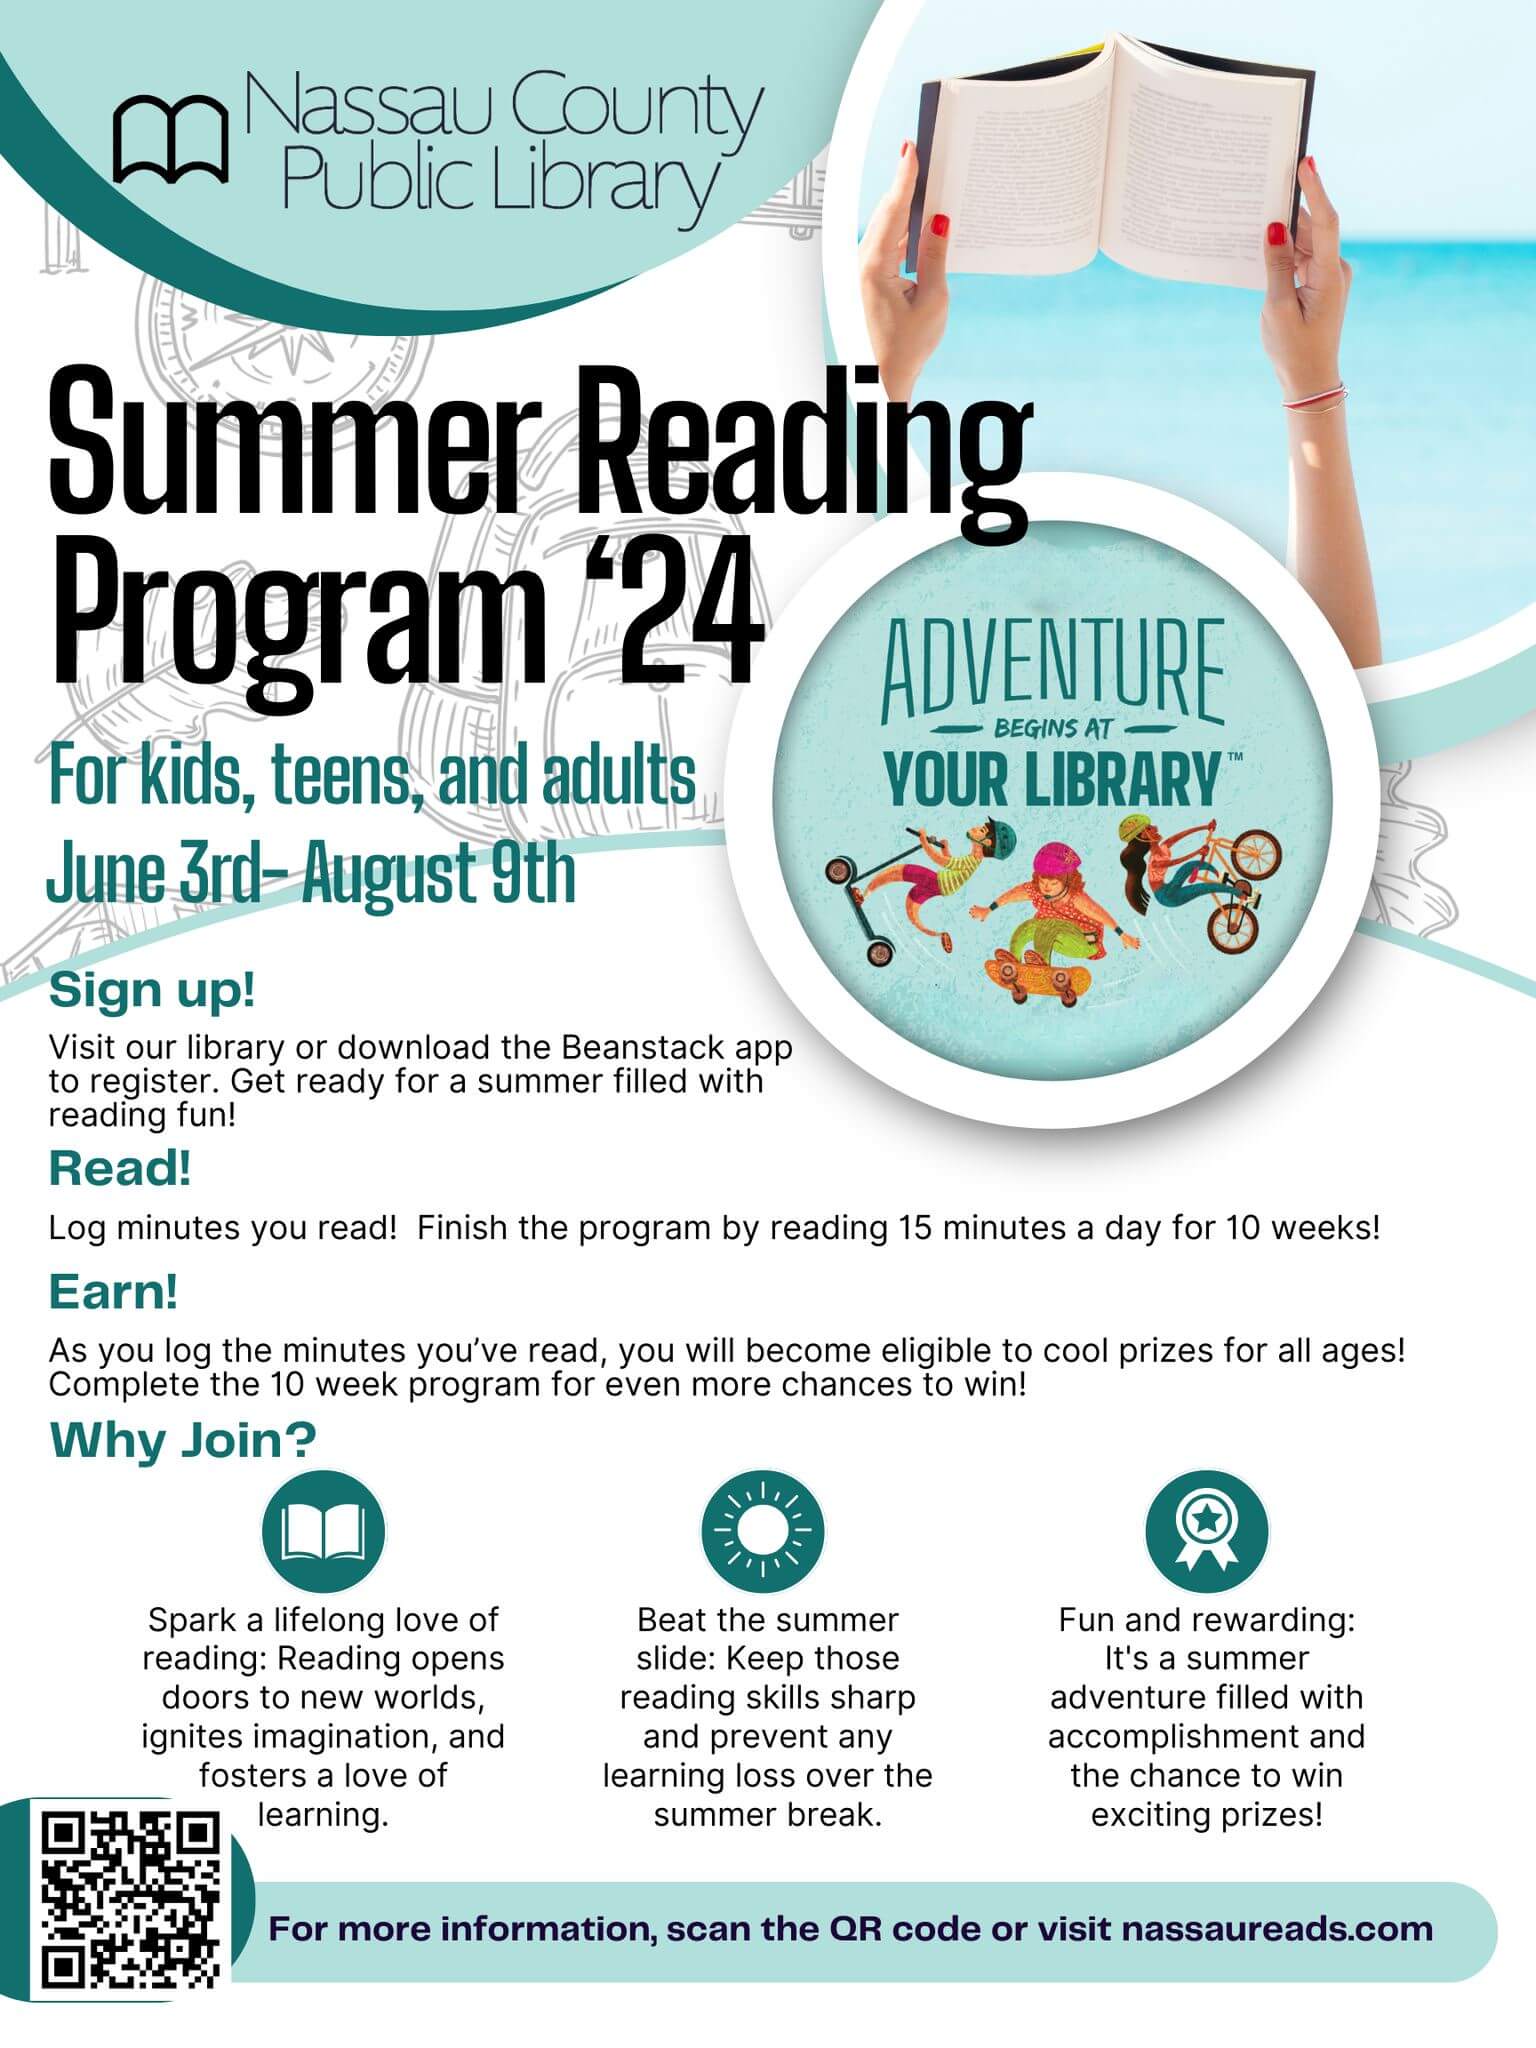 Summer Reading Program flyer